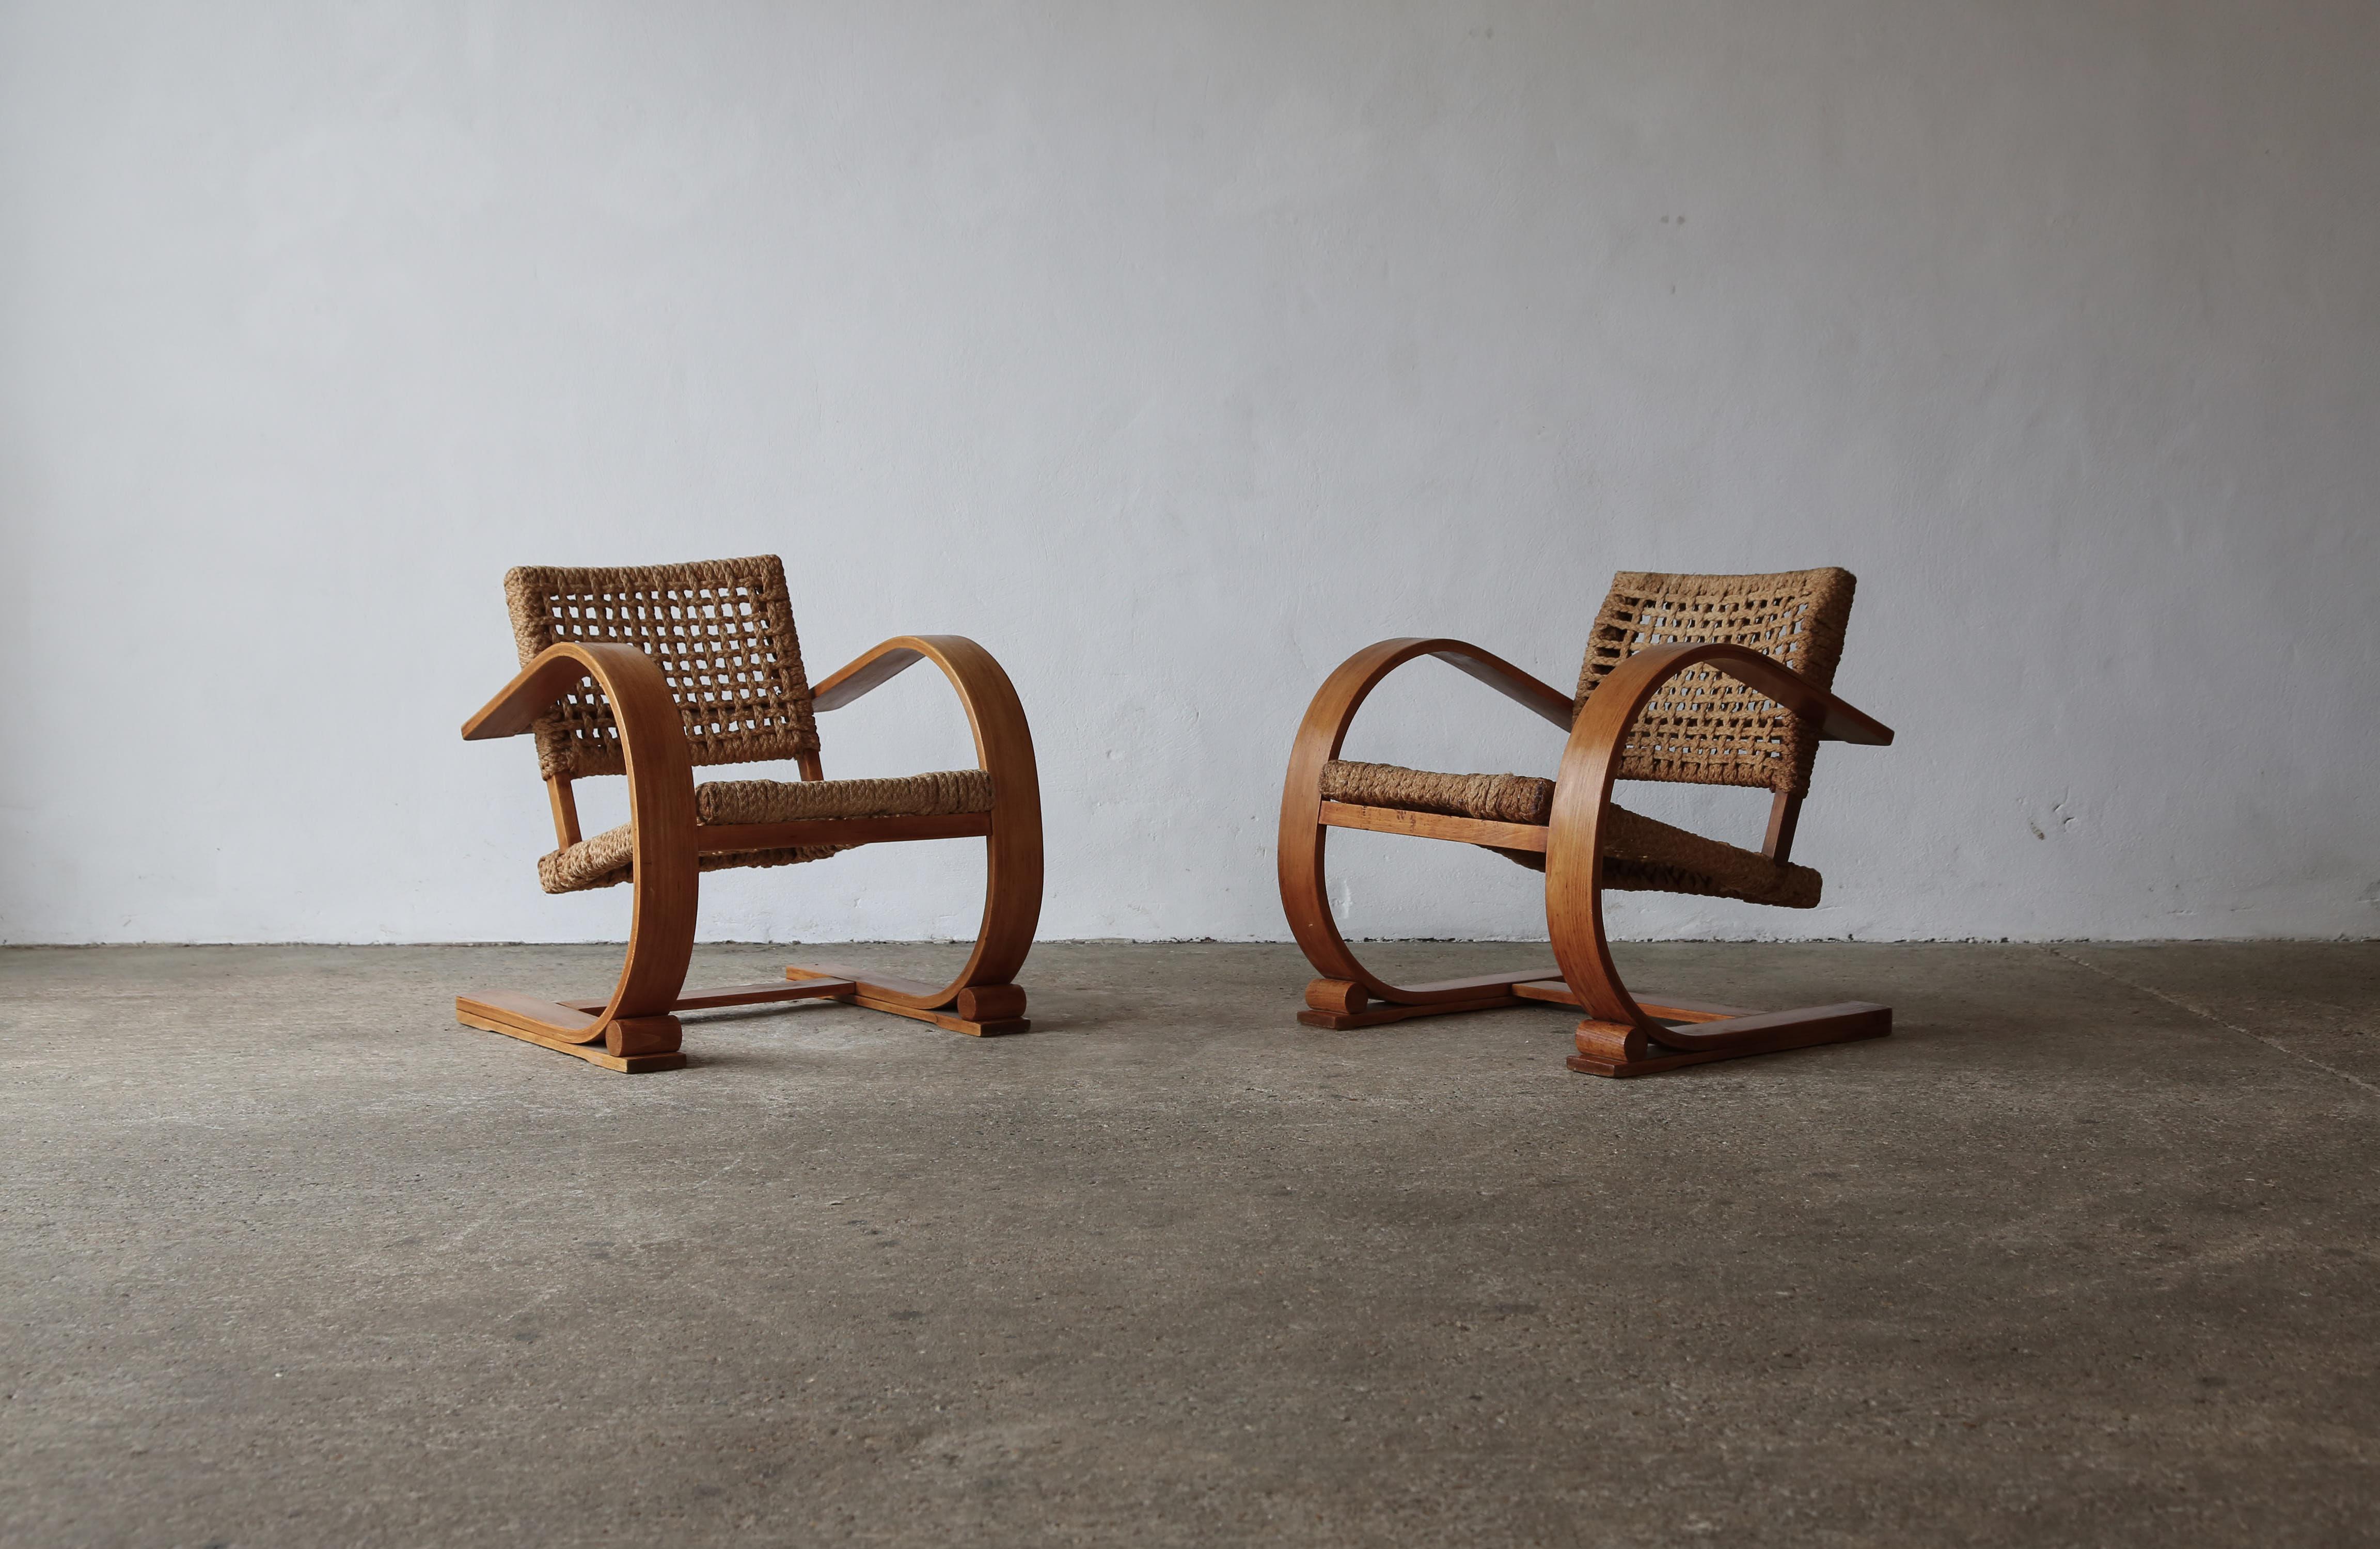 Superbe paire de chaises luge en bois et corde de Frida Minet et Adrien Audoux, années 1950, France. Il s'agit de bons exemples en état d'origine, avec quelques usures, marques et signes d'âge et d'utilisation sur la corde en bois. Expédition rapide